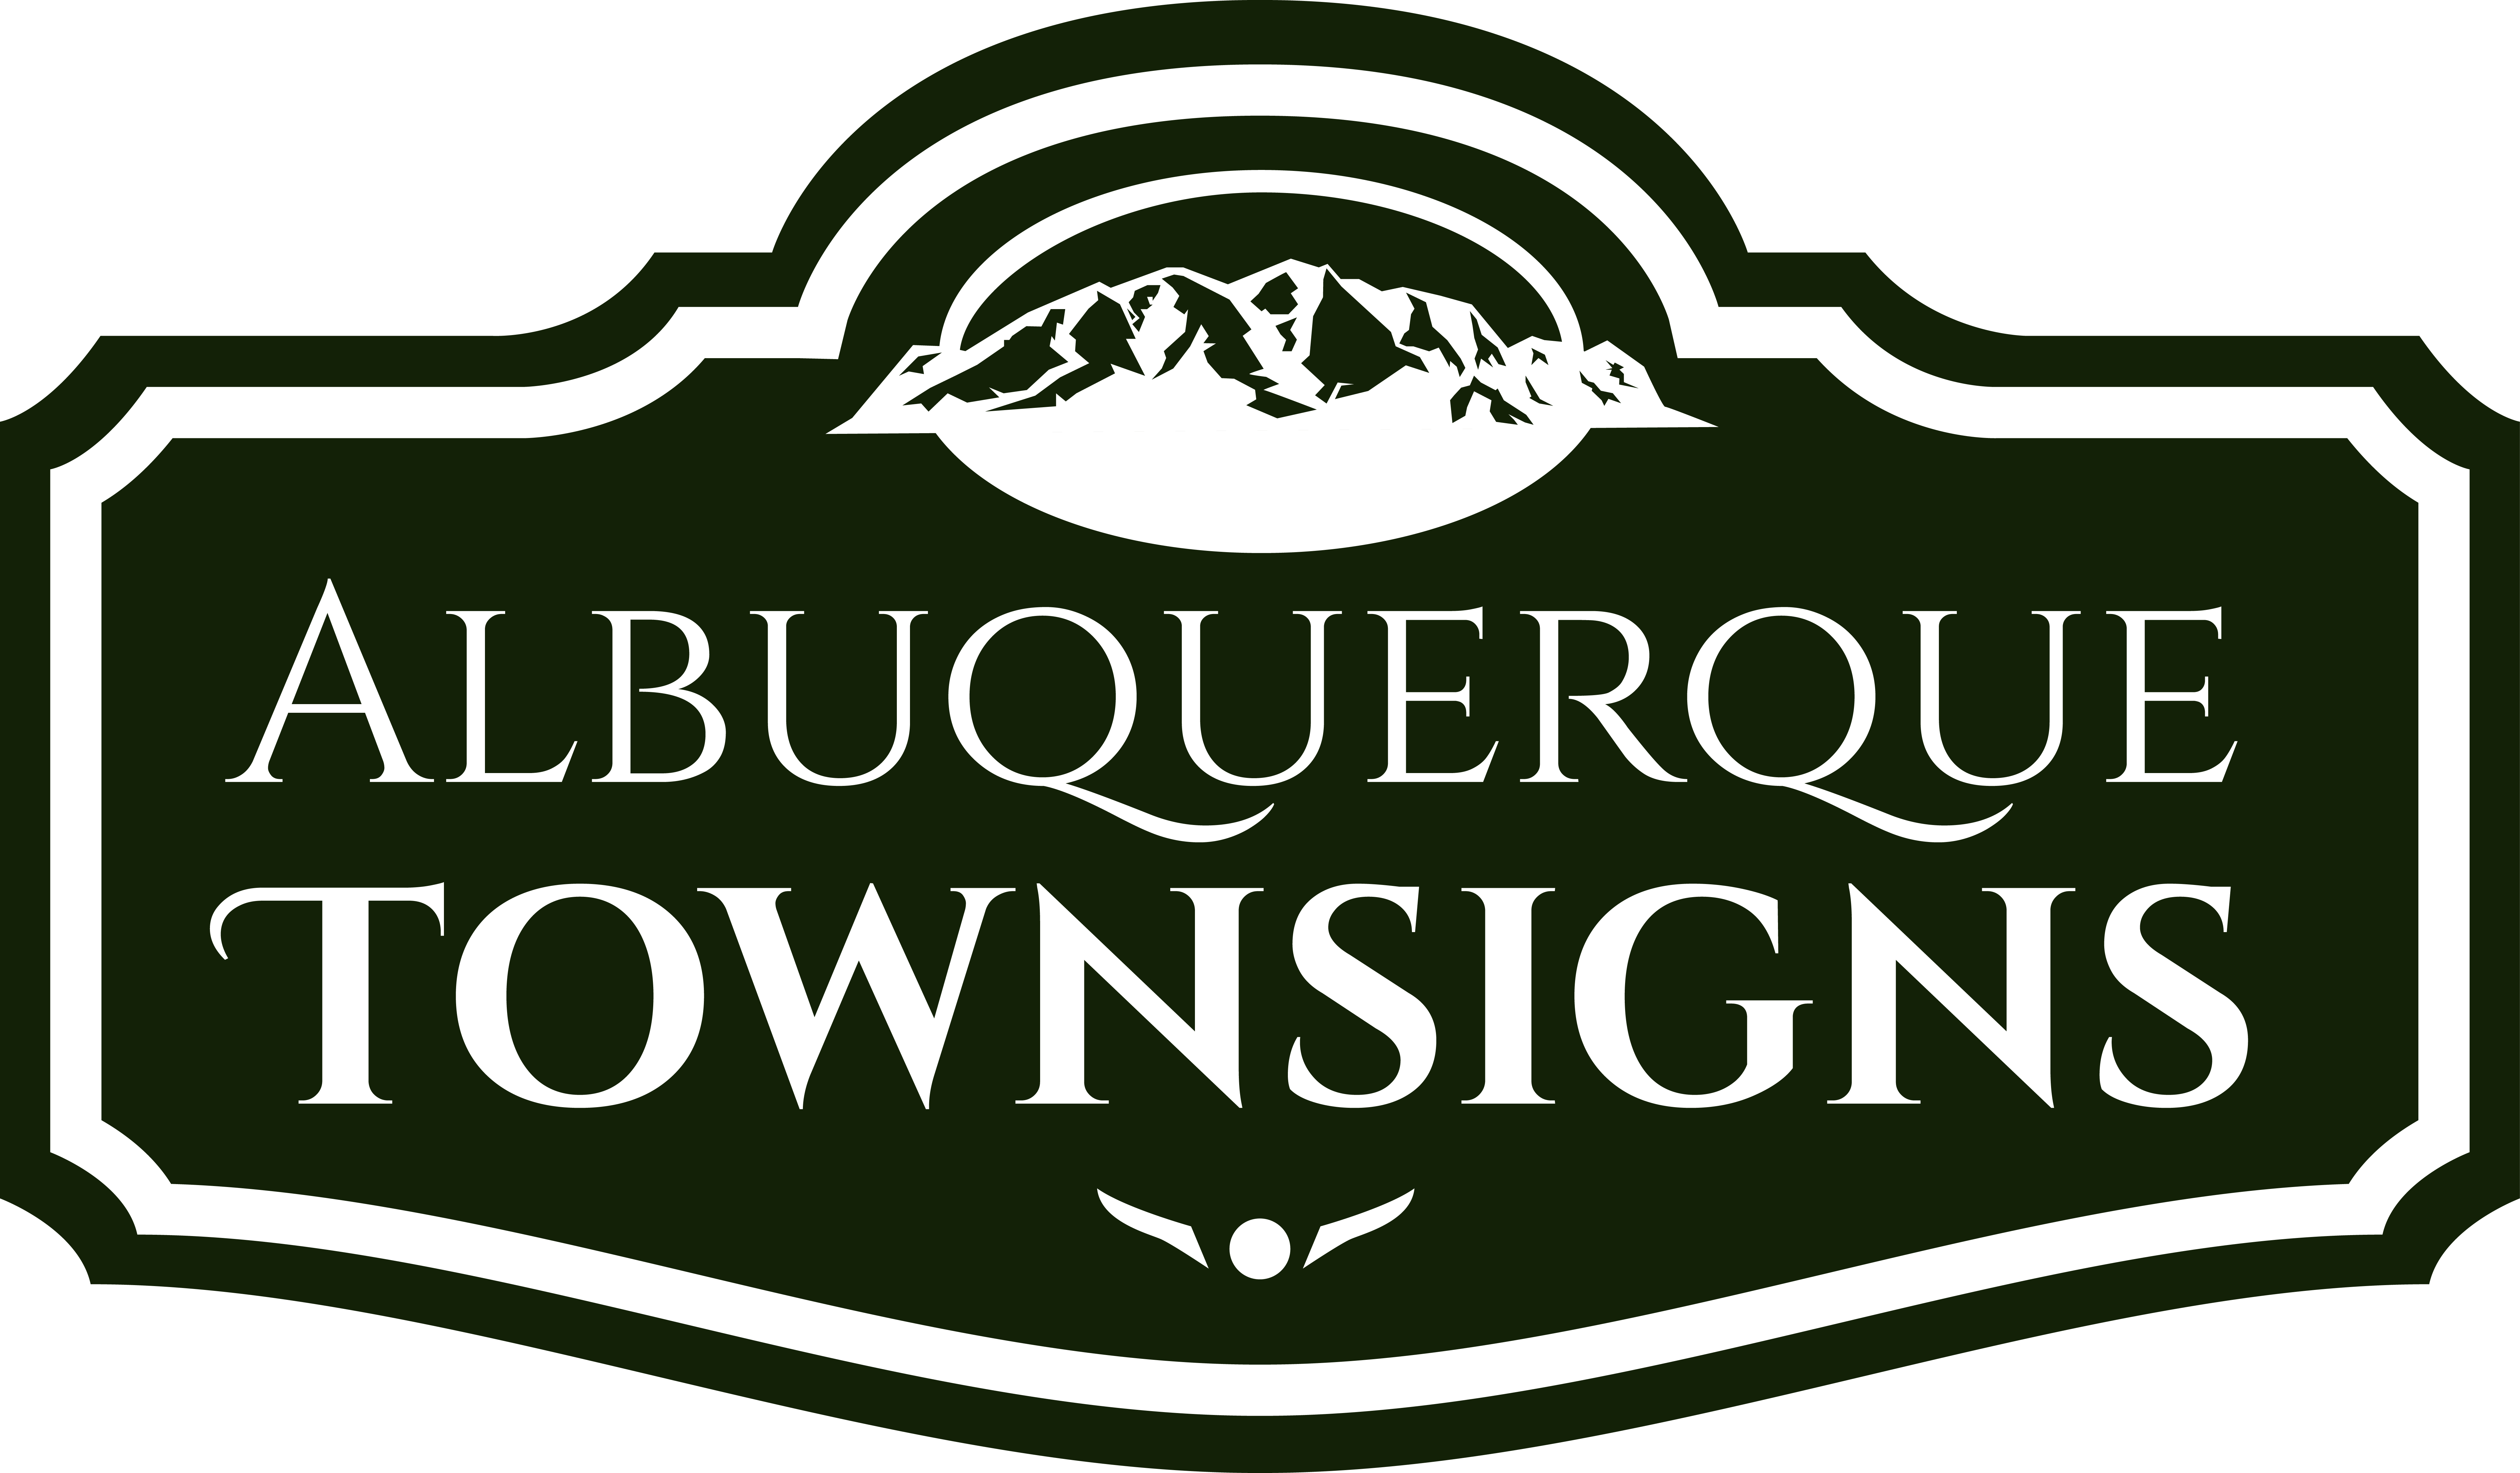 Town Signs for Albuquerque